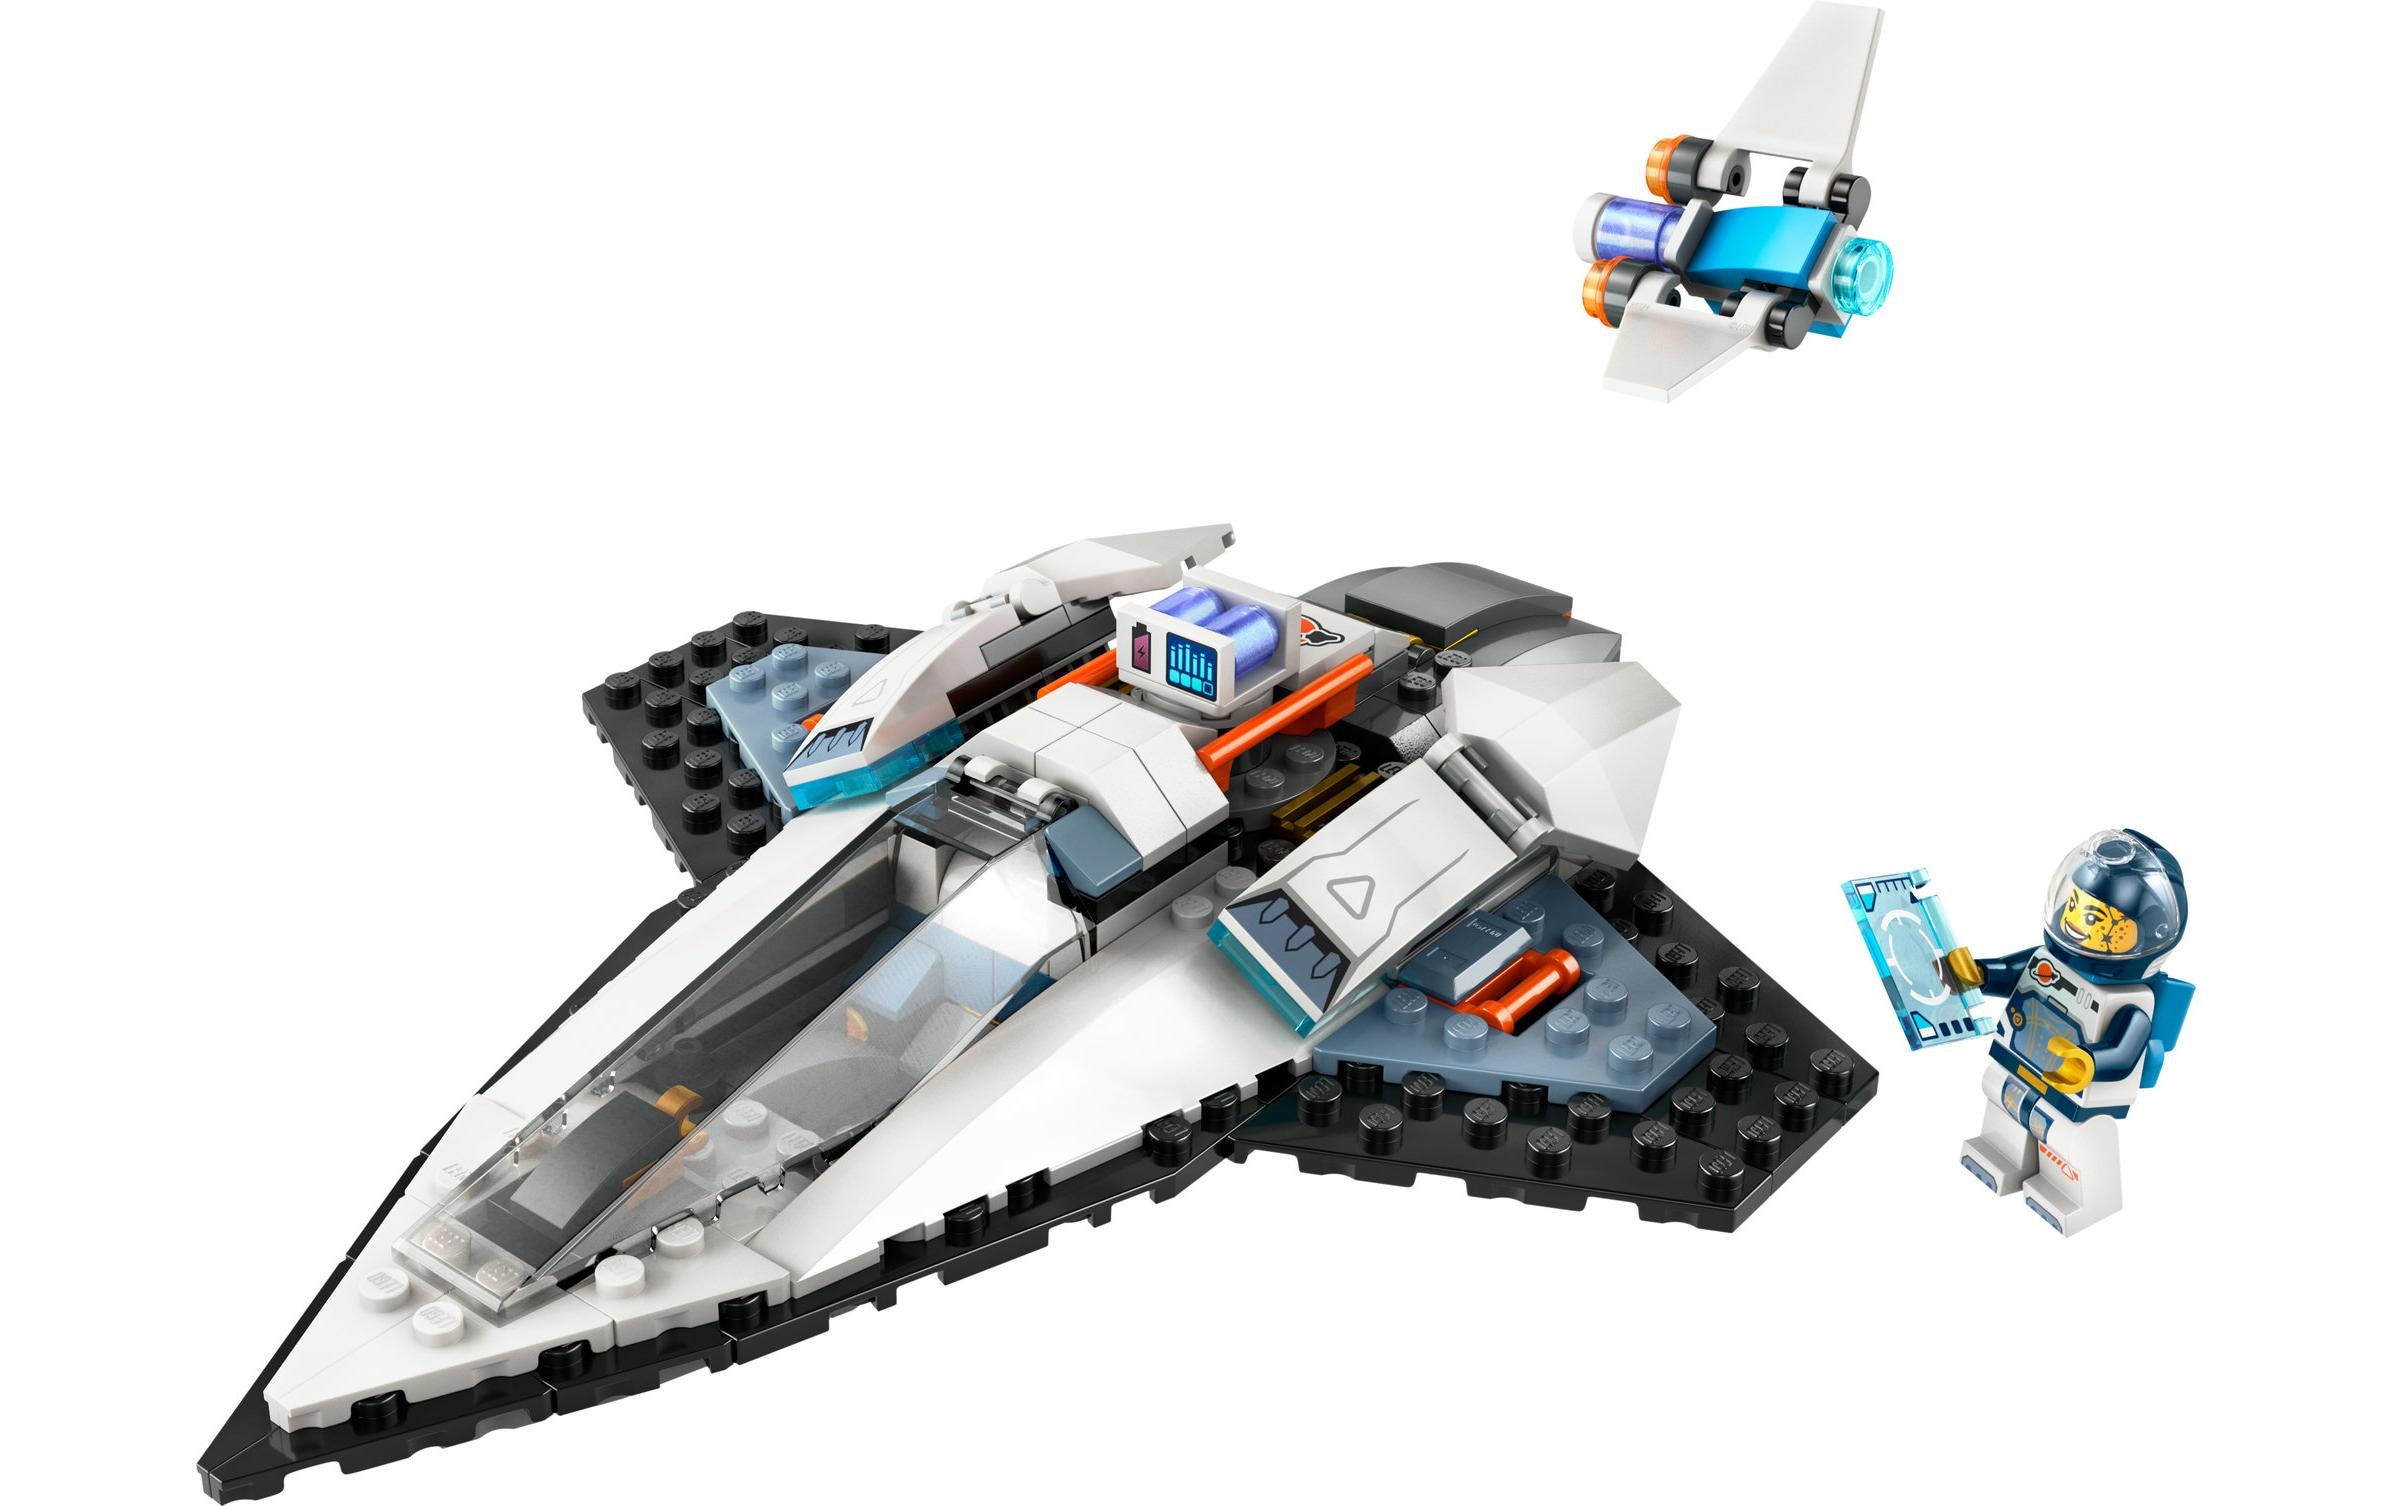 LEGO® Spielbausteine »Raumschiff 60430«, (240 St.)